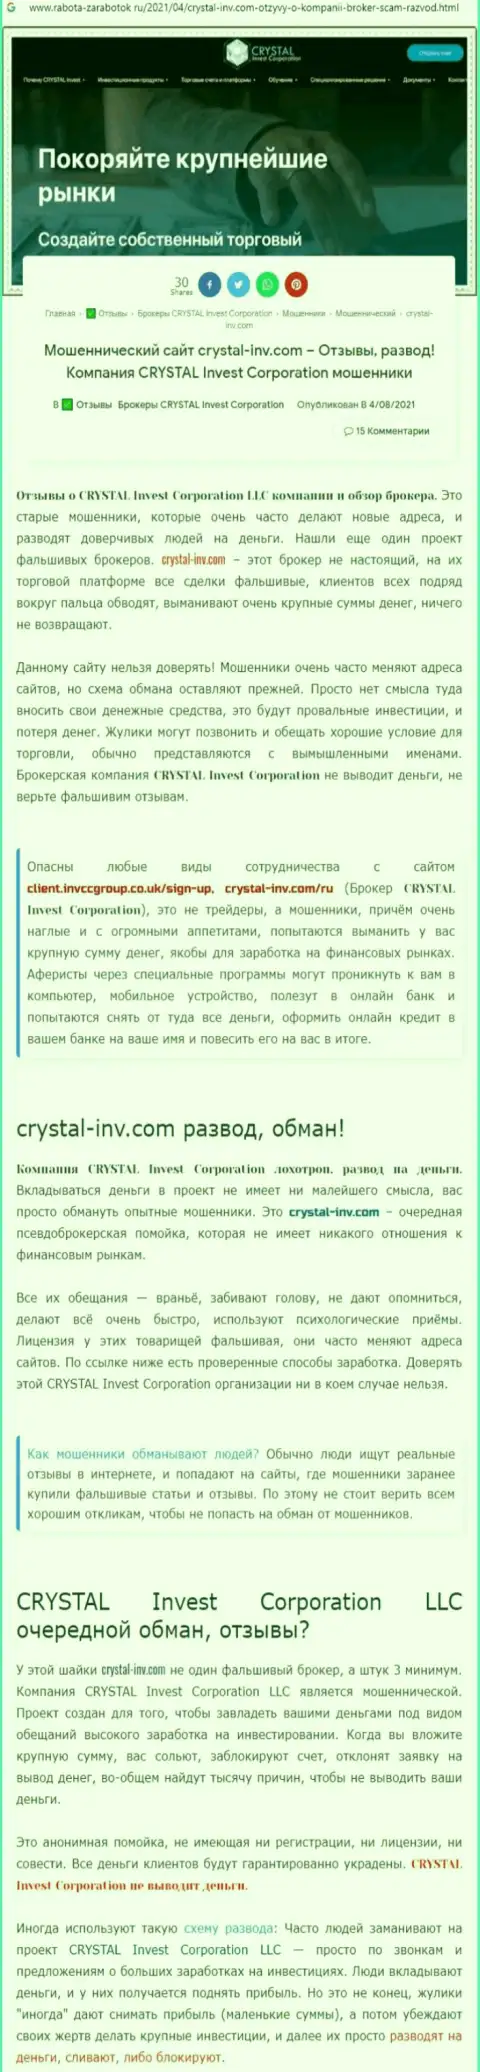 Материал, разоблачающий организацию CrystalInvestCorporation, взятый с ресурса с обзорами манипуляций разных организаций